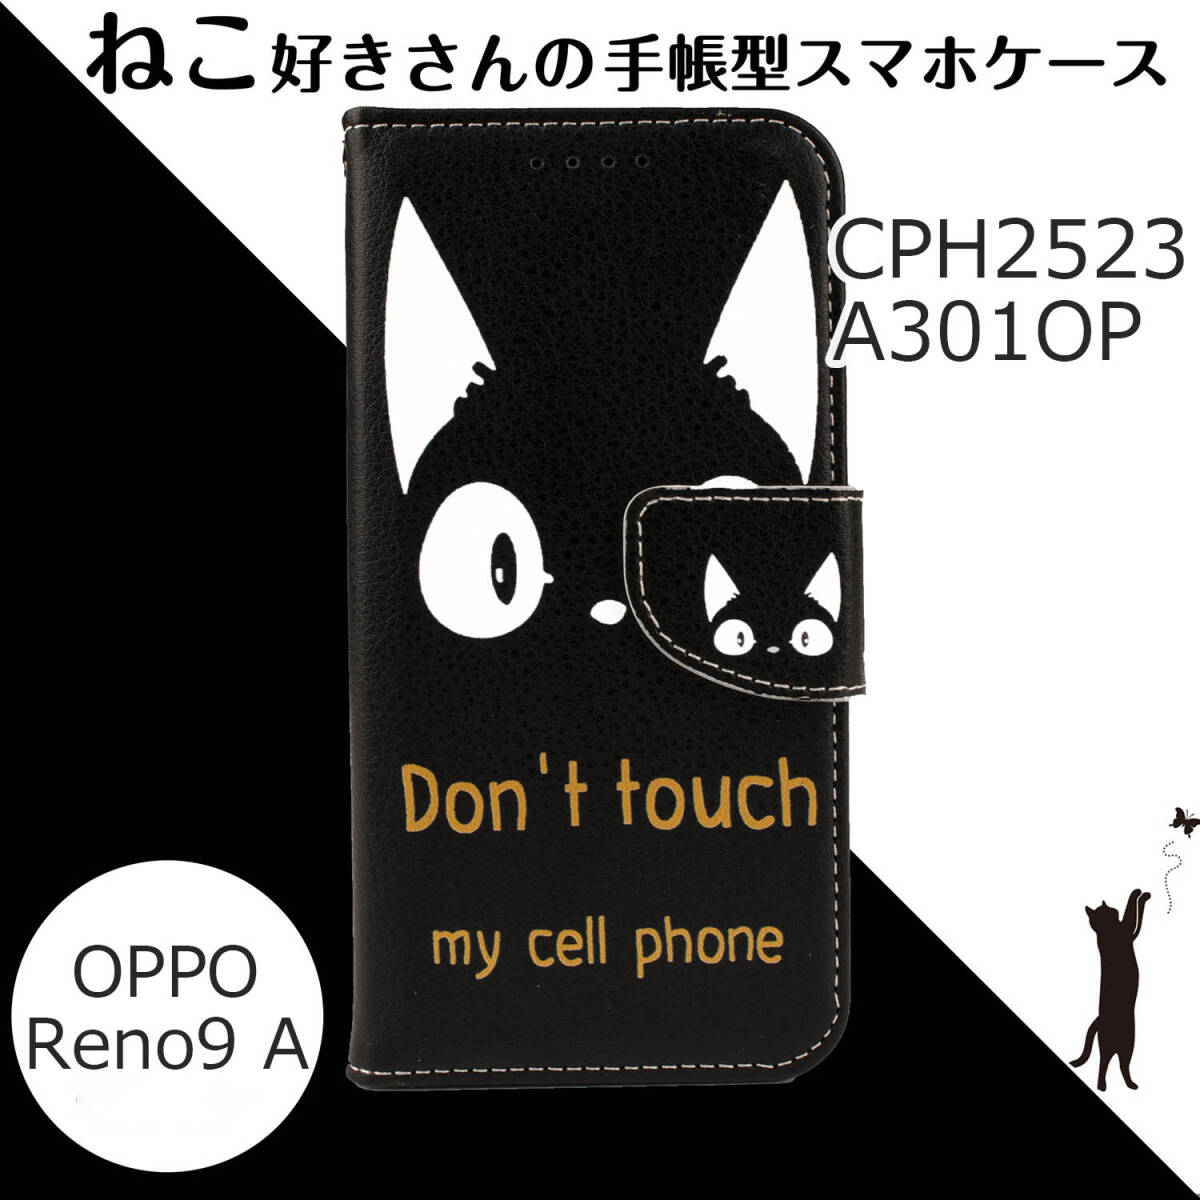 OPPO Reno9A ケース 手帳型 かわいい CPH2523 A301OP カバー おしゃれ 猫 ねこ ネコ Black 人気 スマホケース 黒 白 ブラック 送料無料 安の画像1